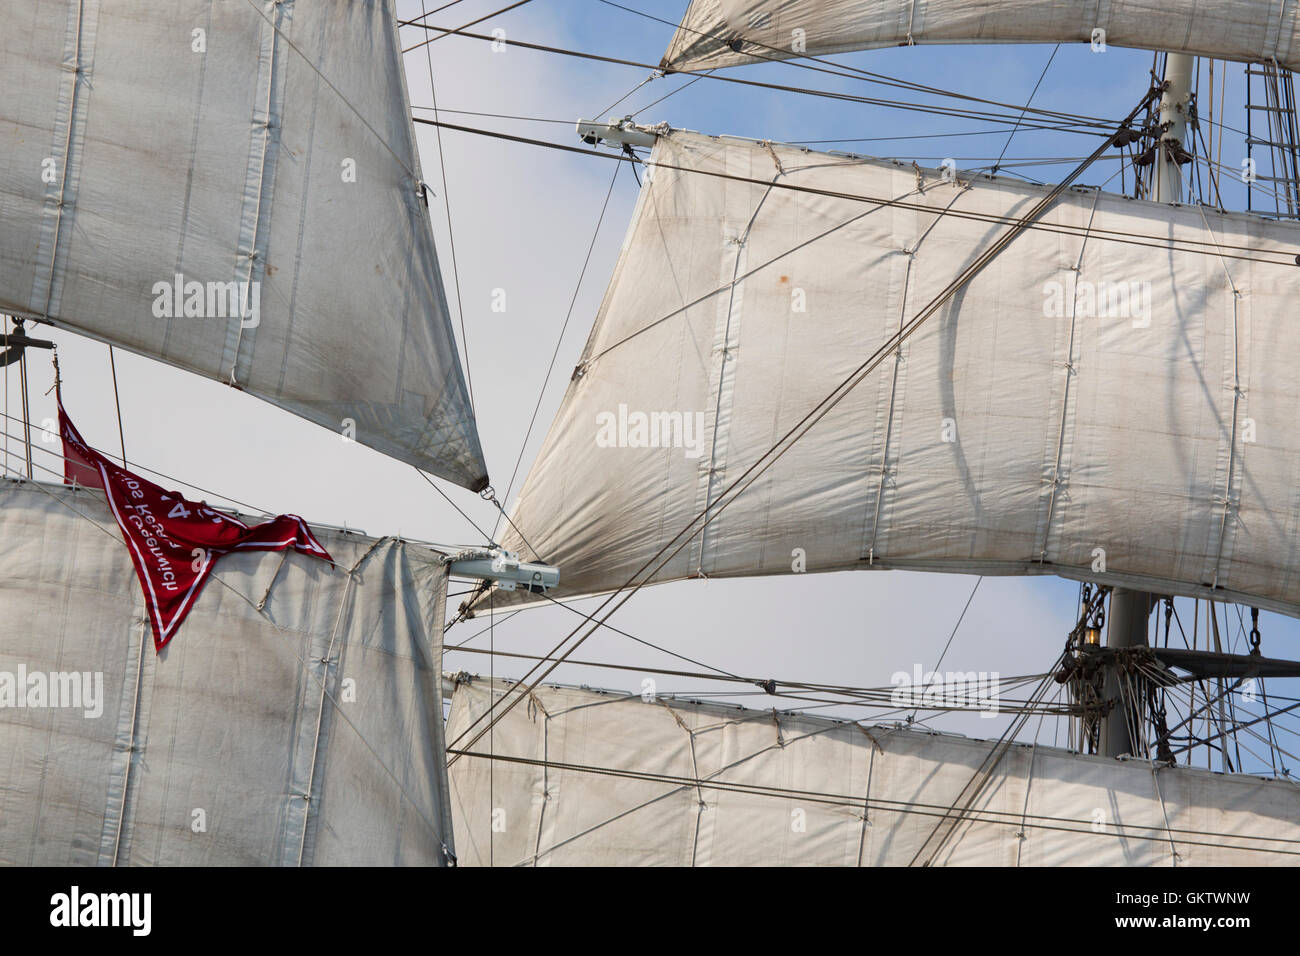 Voiles et gréement ; grand voilier Falmouth, Royaume-Uni Banque D'Images